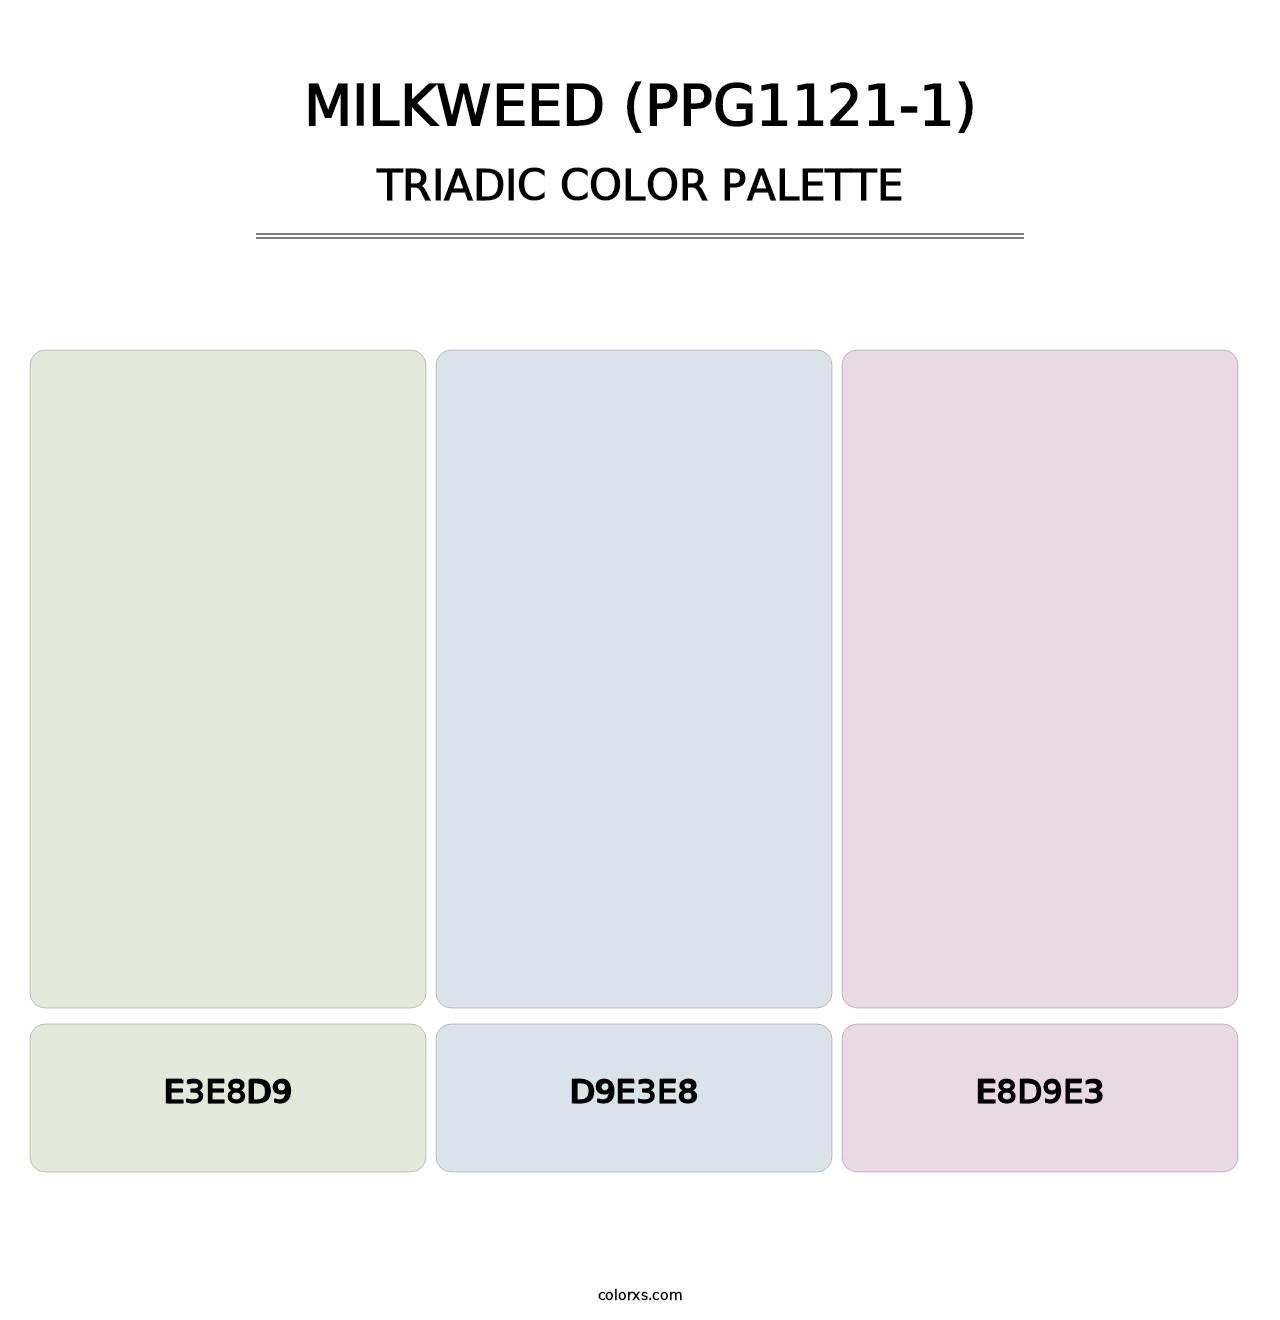 Milkweed (PPG1121-1) - Triadic Color Palette